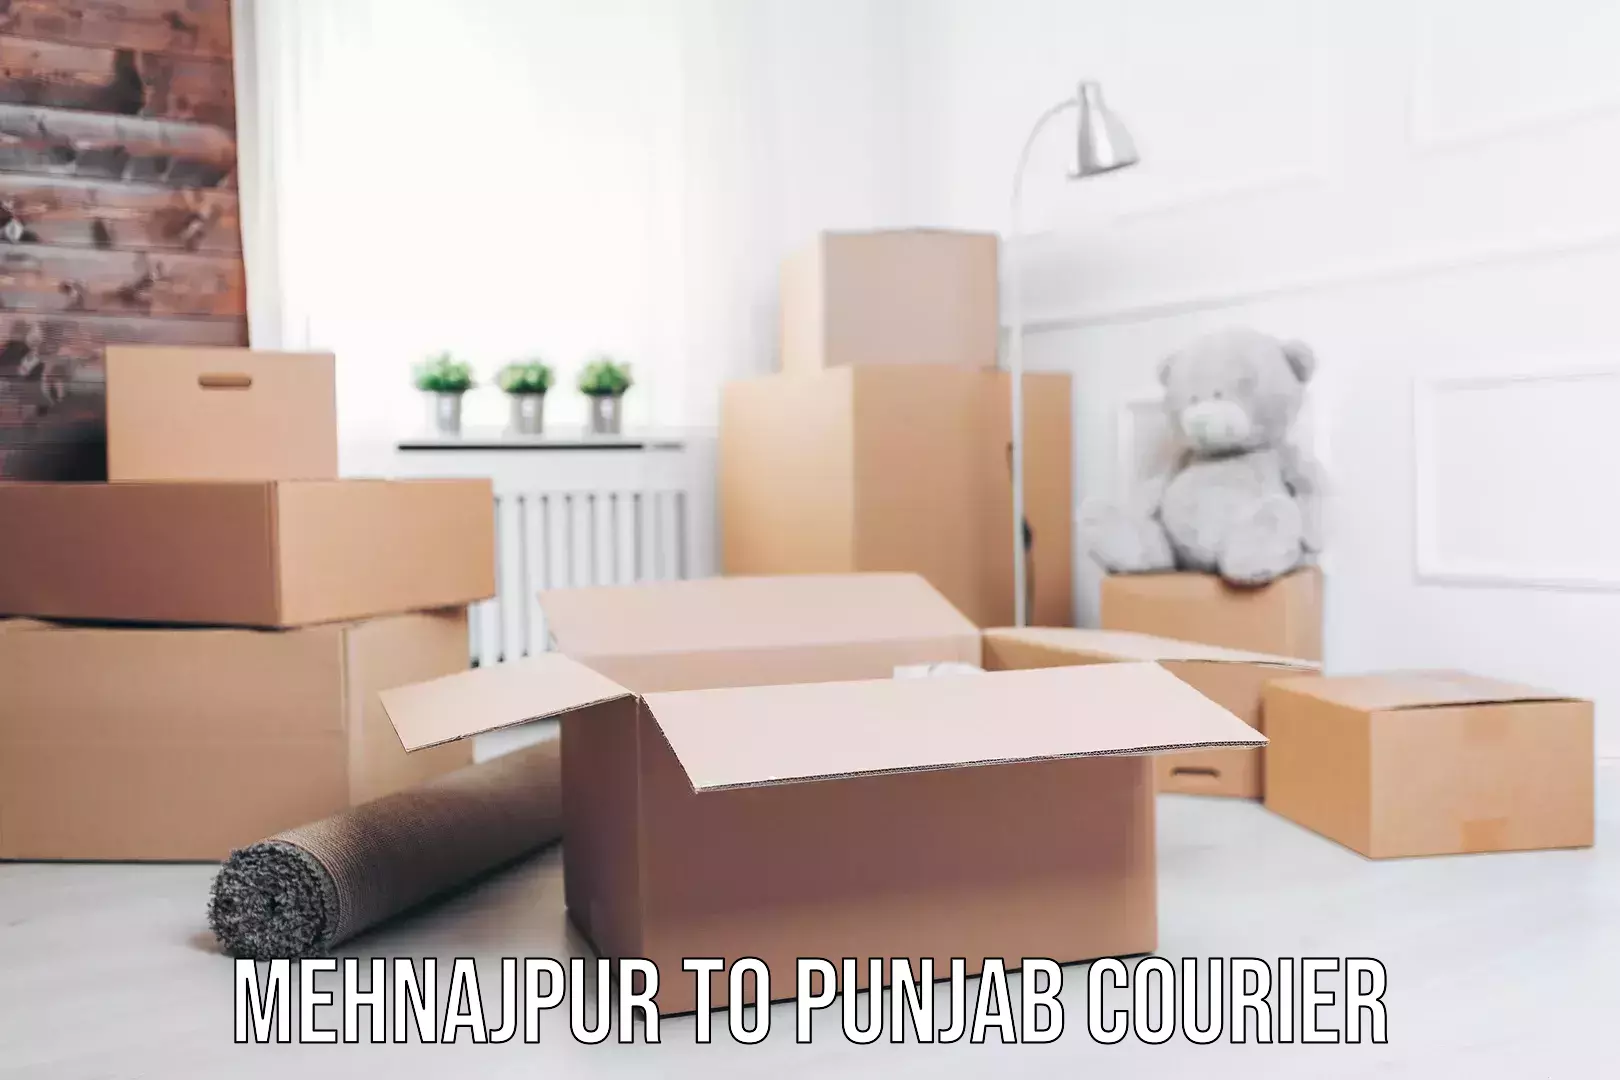 Furniture moving plans Mehnajpur to Punjab